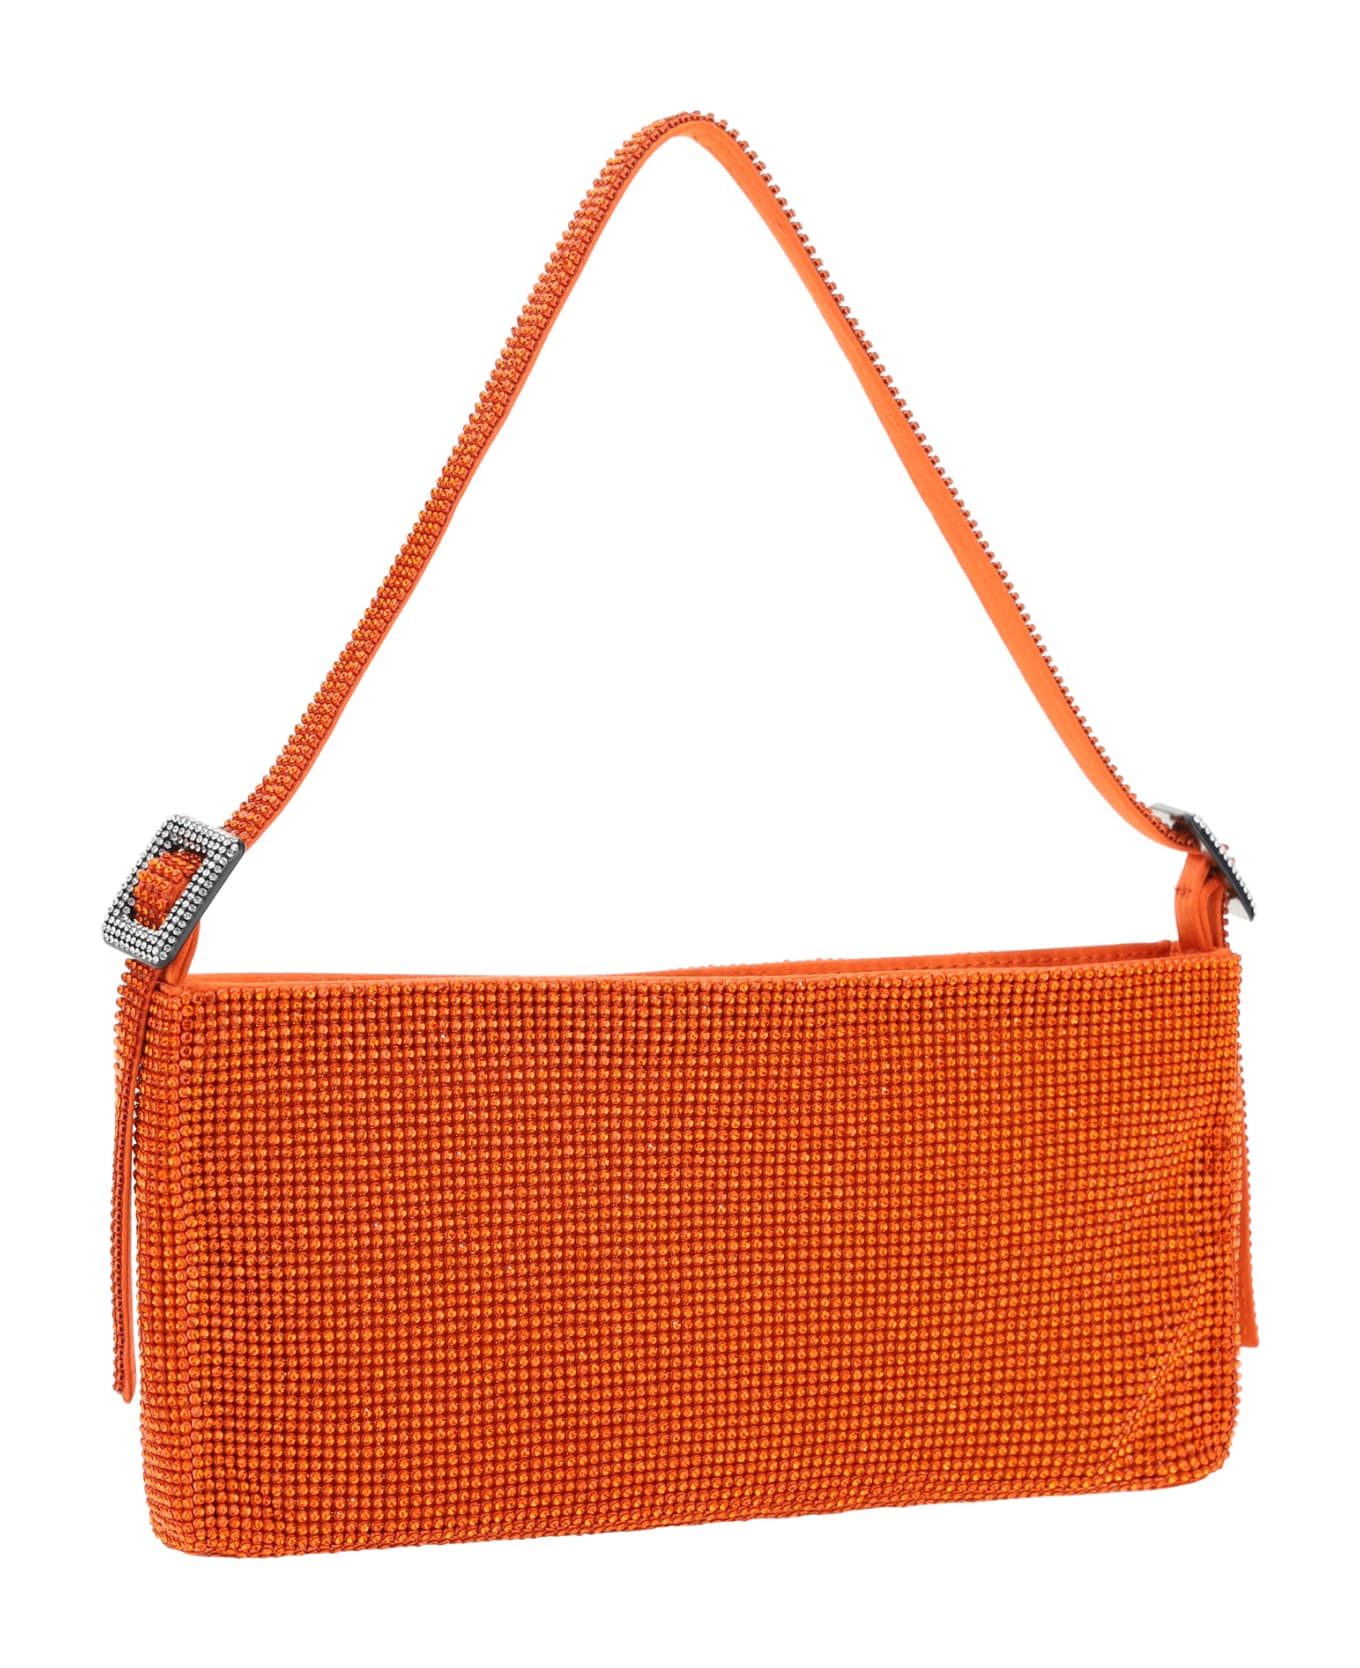 Benedetta Bruzziches Handbag - Orange トートバッグ